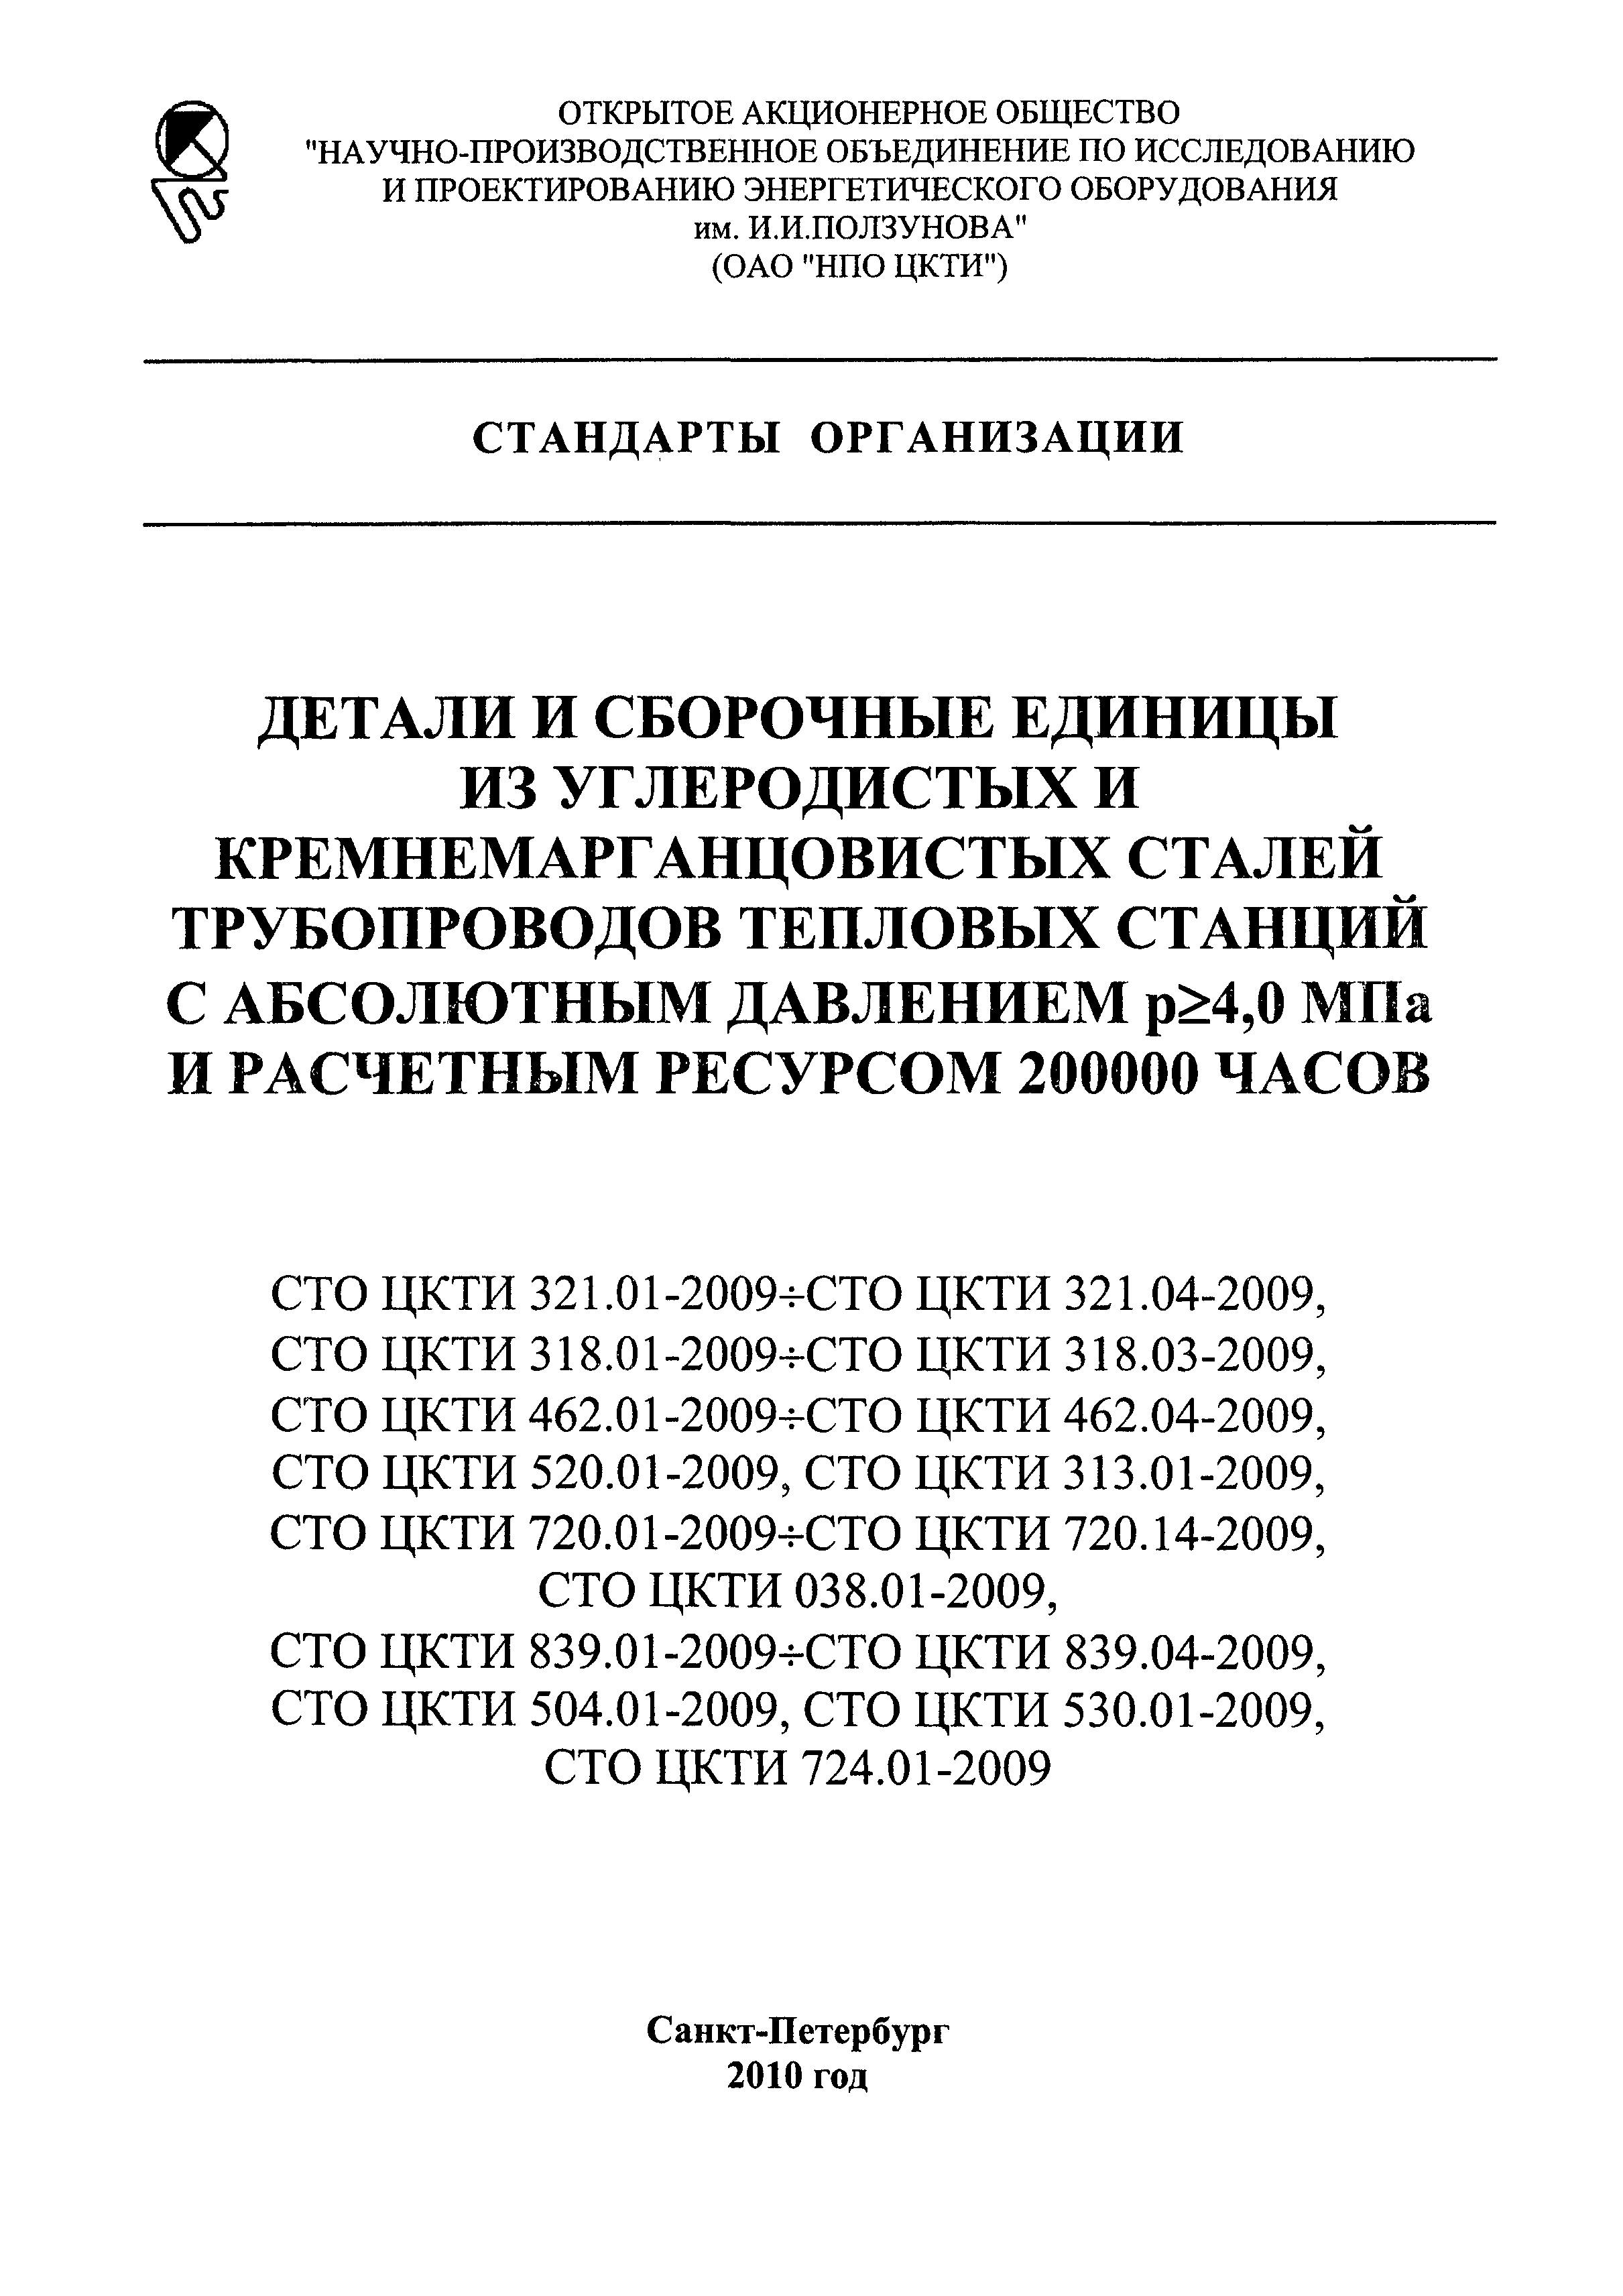 СТО ЦКТИ 321.03-2009